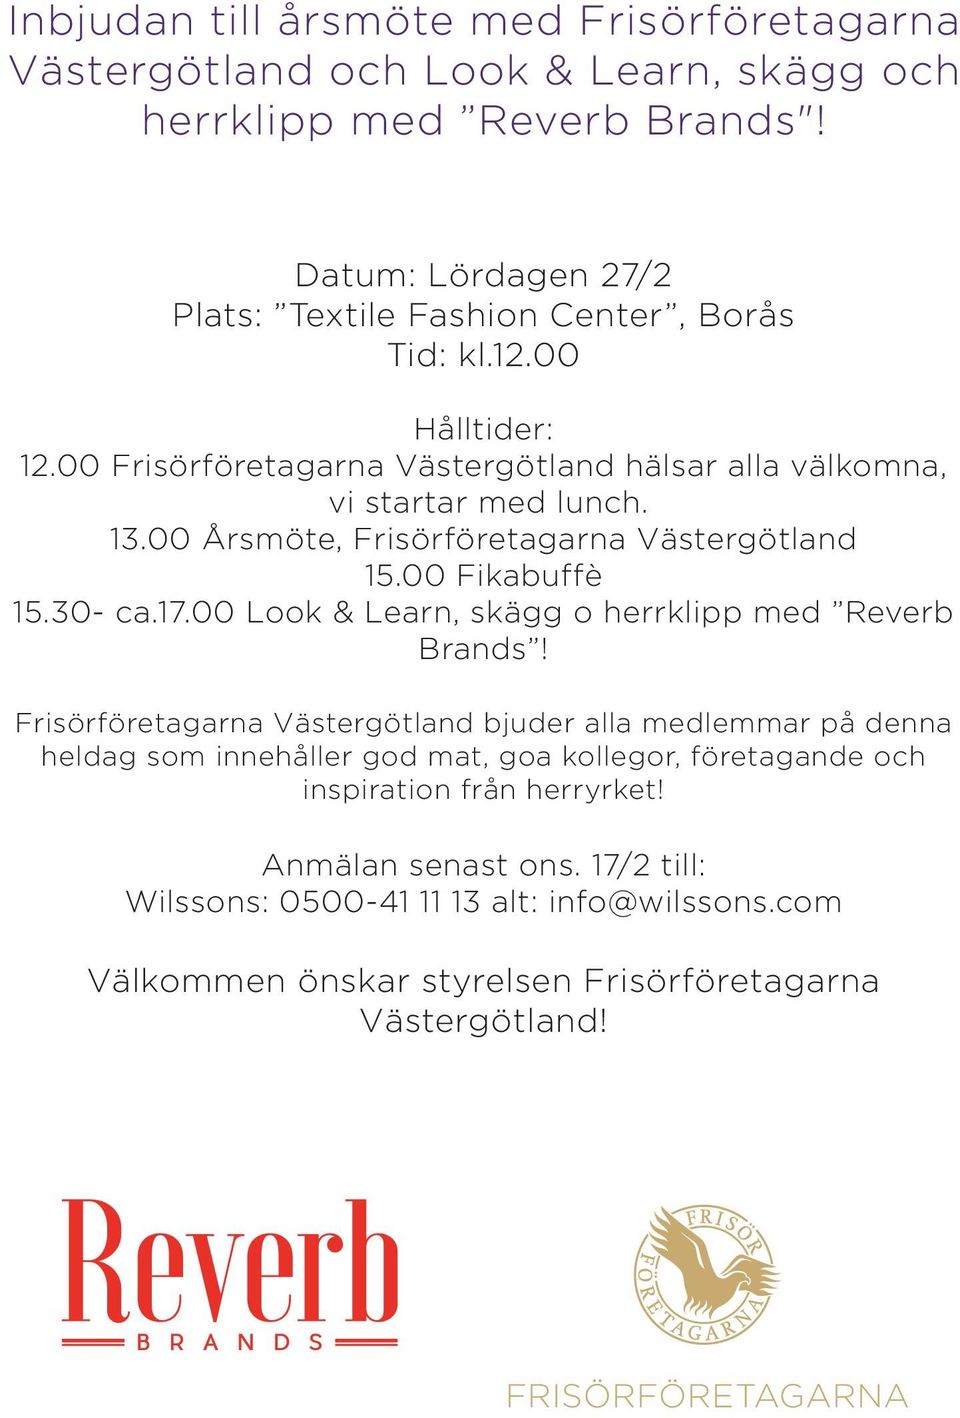 00 Årsmöte, Frisörföretagarna Västergötland 15.00 Fikabuffè 15.30- ca.17.00 Look & Learn, skägg o herrklipp med Reverb Brands!